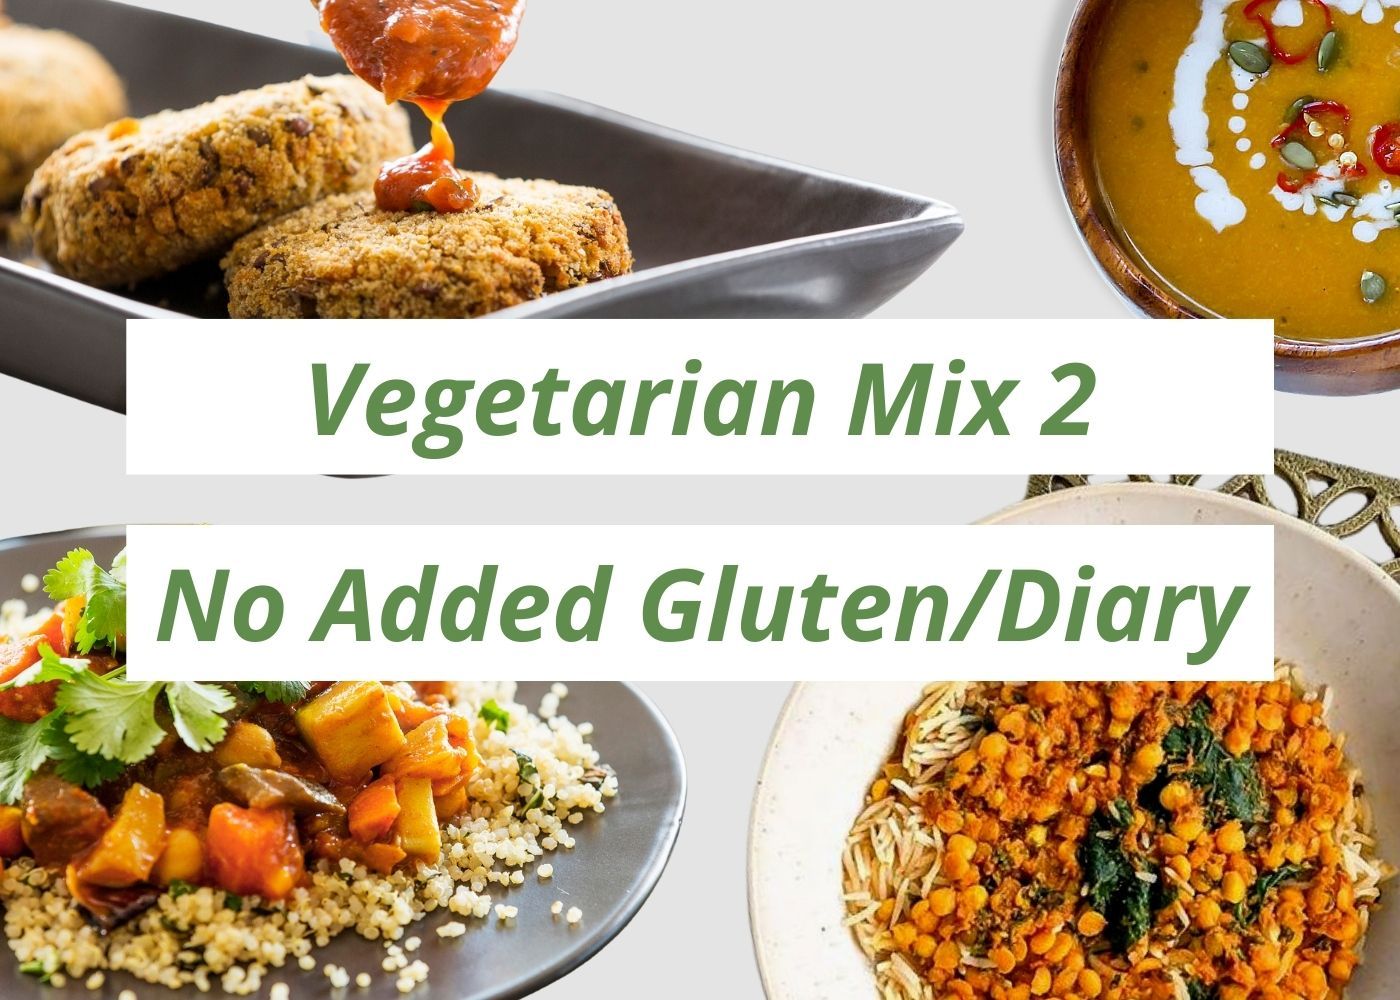 Vegetarian Mix 2 (No Added Gluten/Dairy)